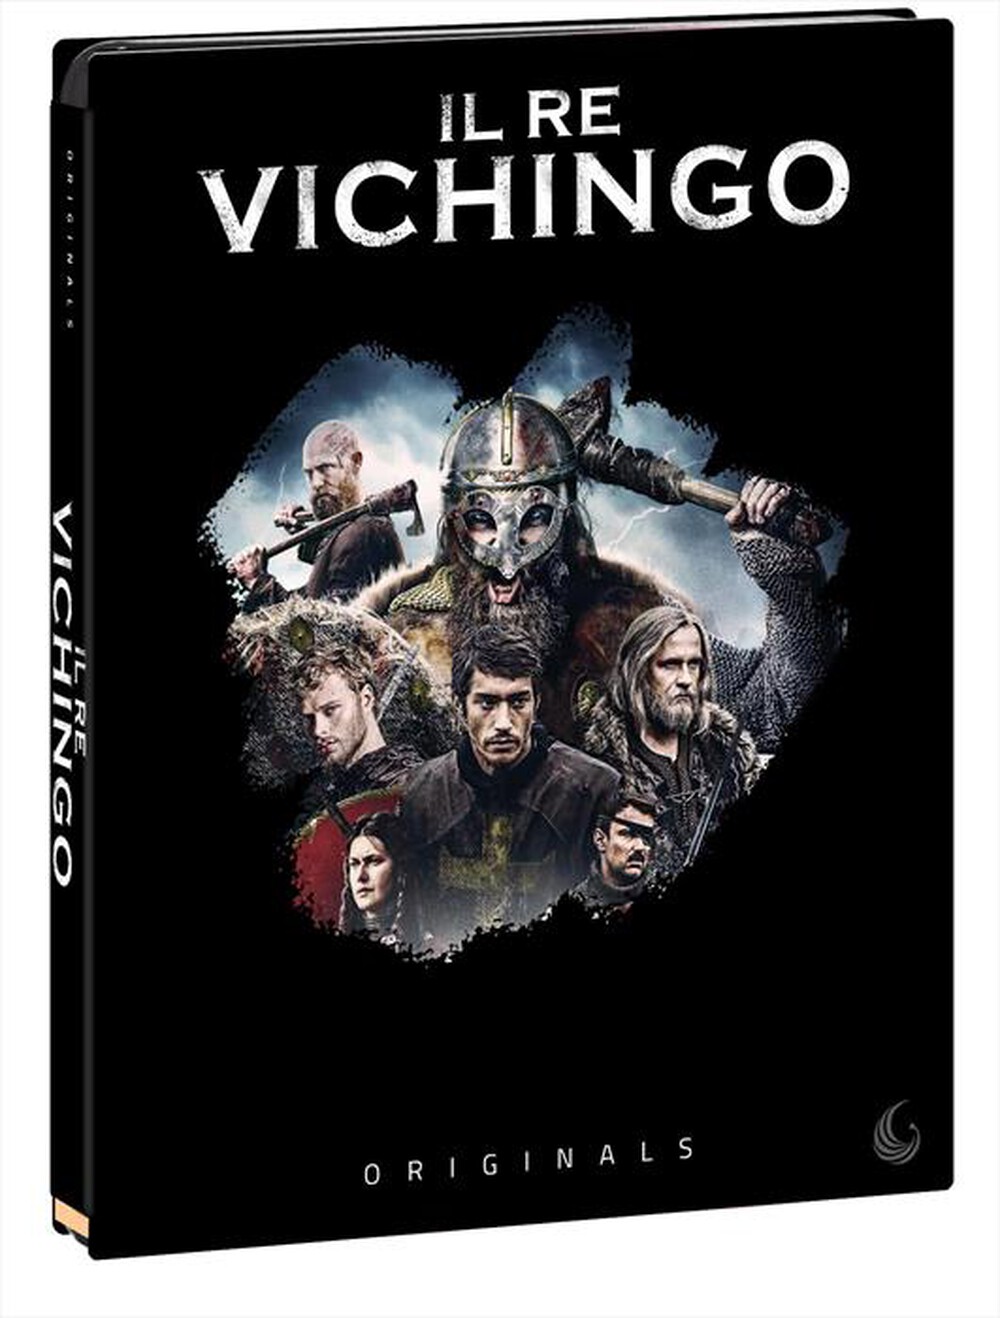 "EAGLE PICTURES - Re Vichingo (Il) (Blu-Ray+Dvd)"